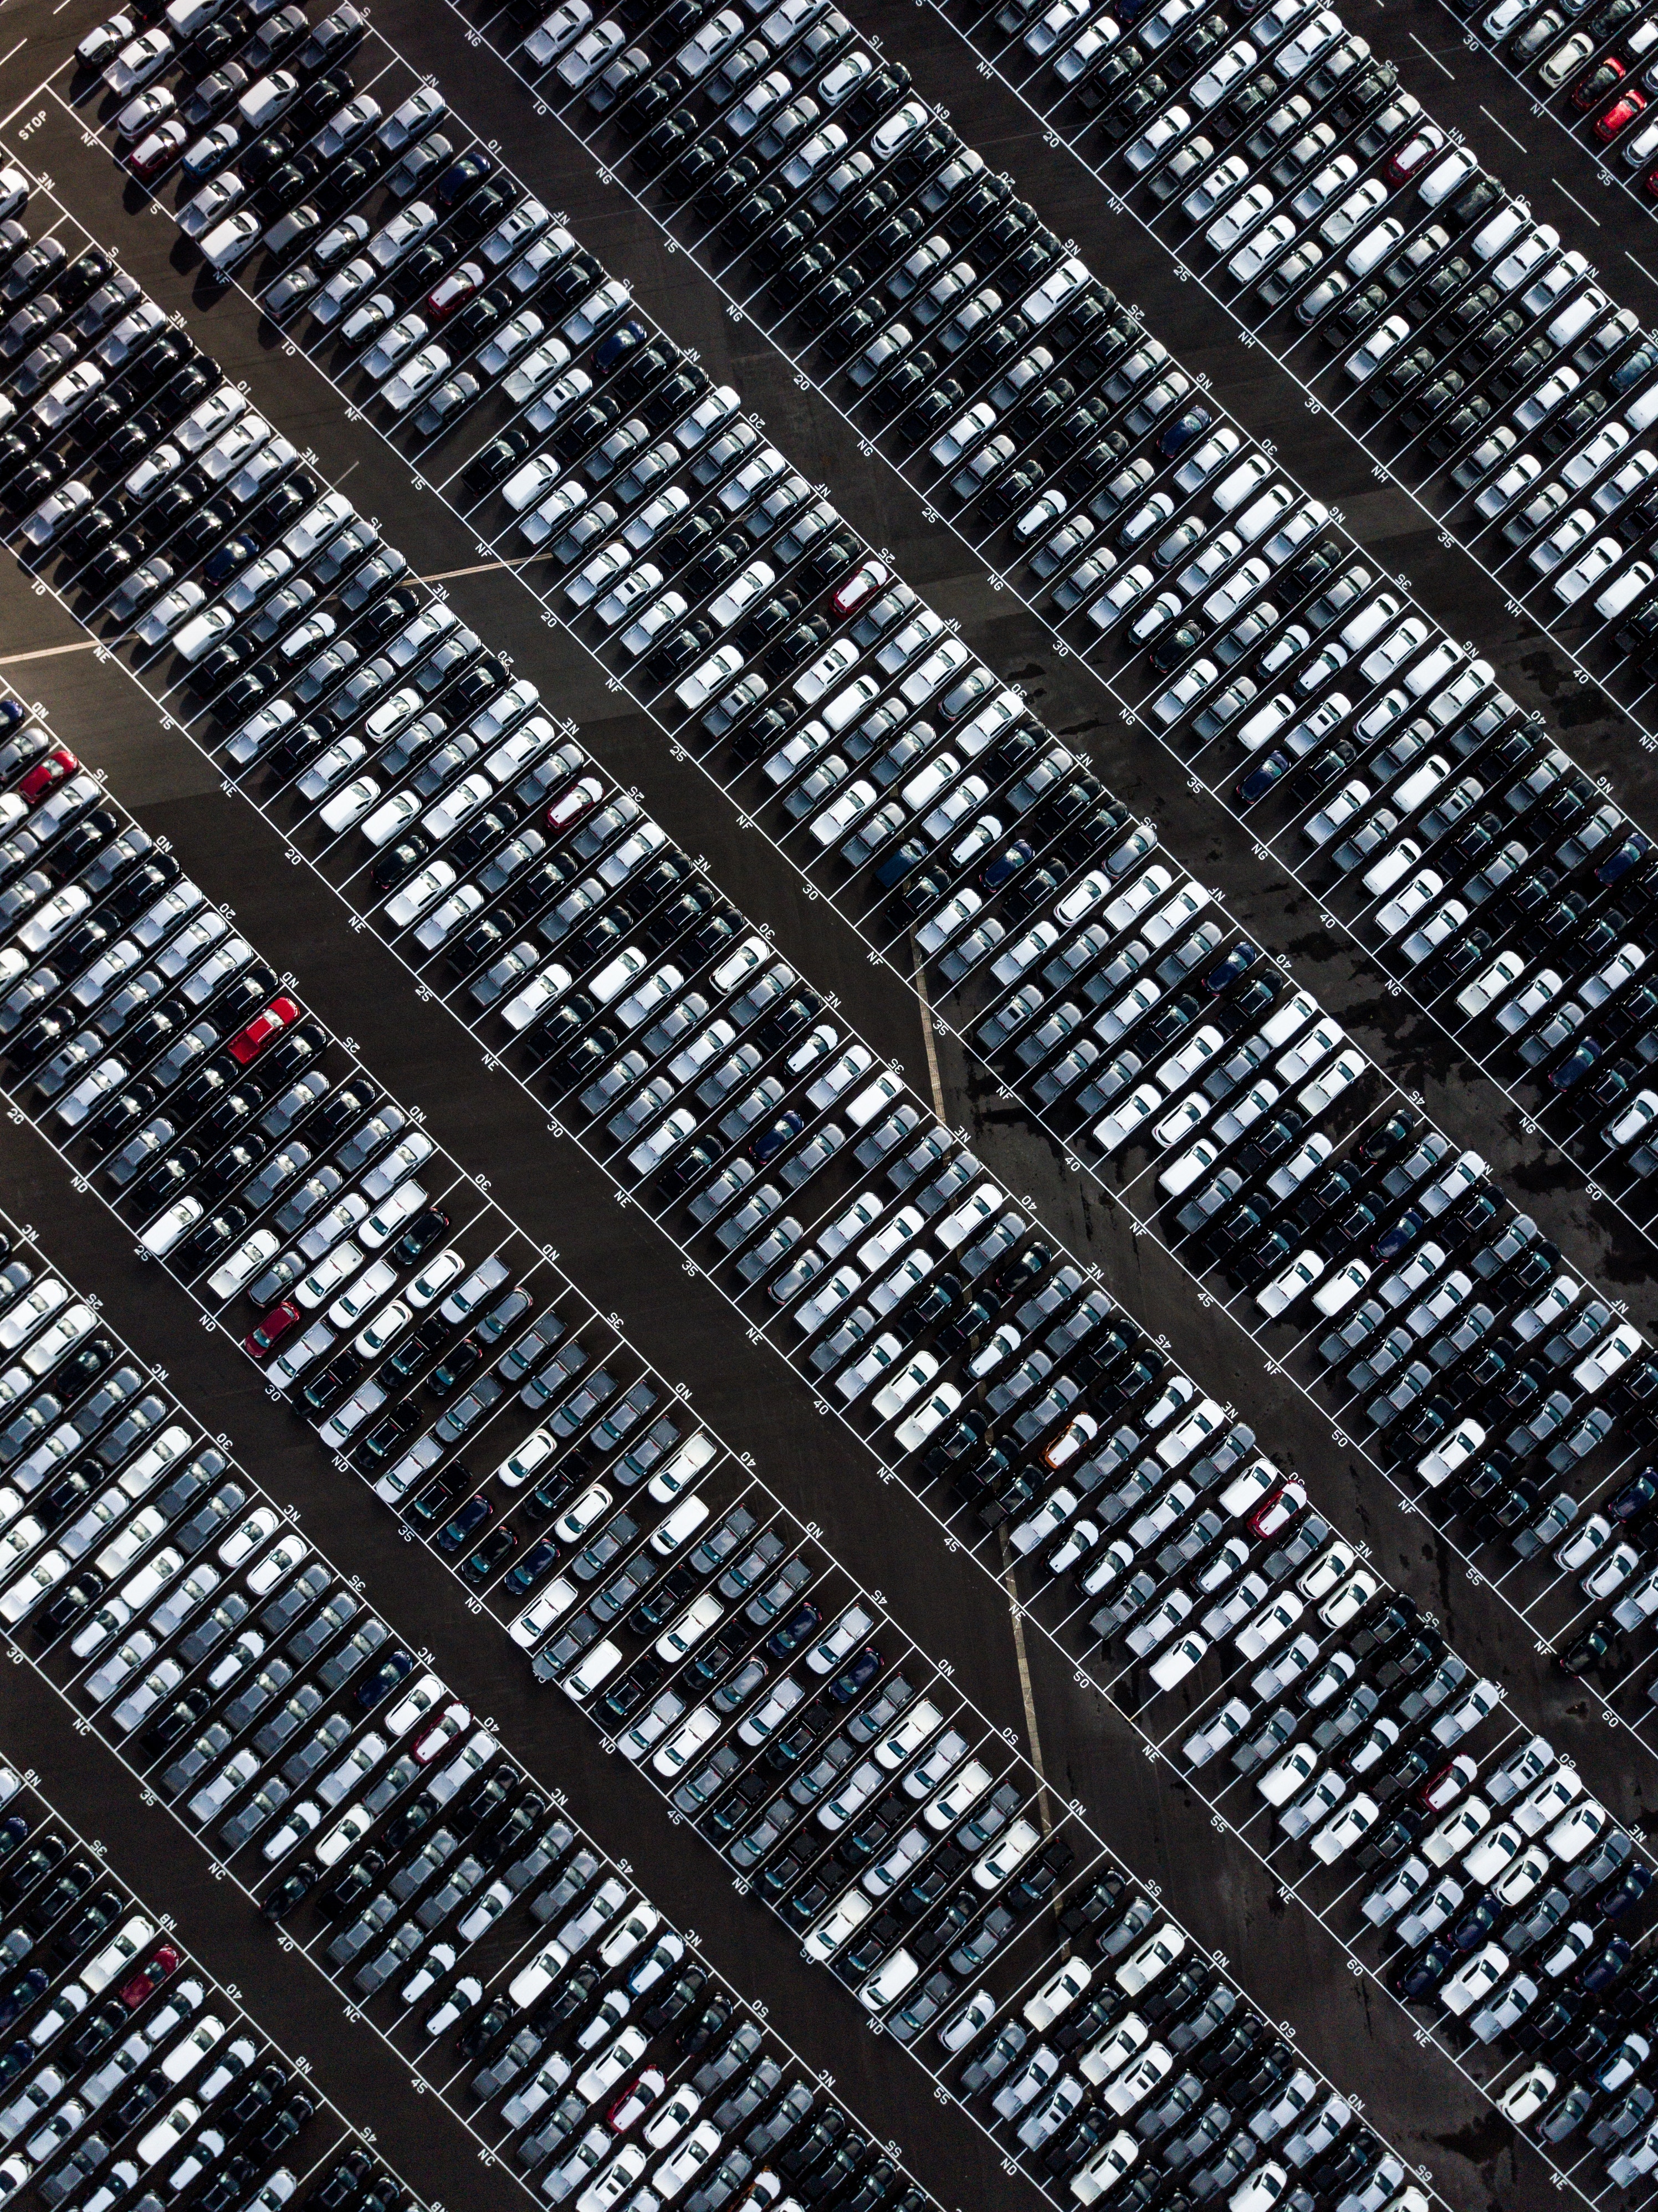 parking, cars, dividing lines QHD